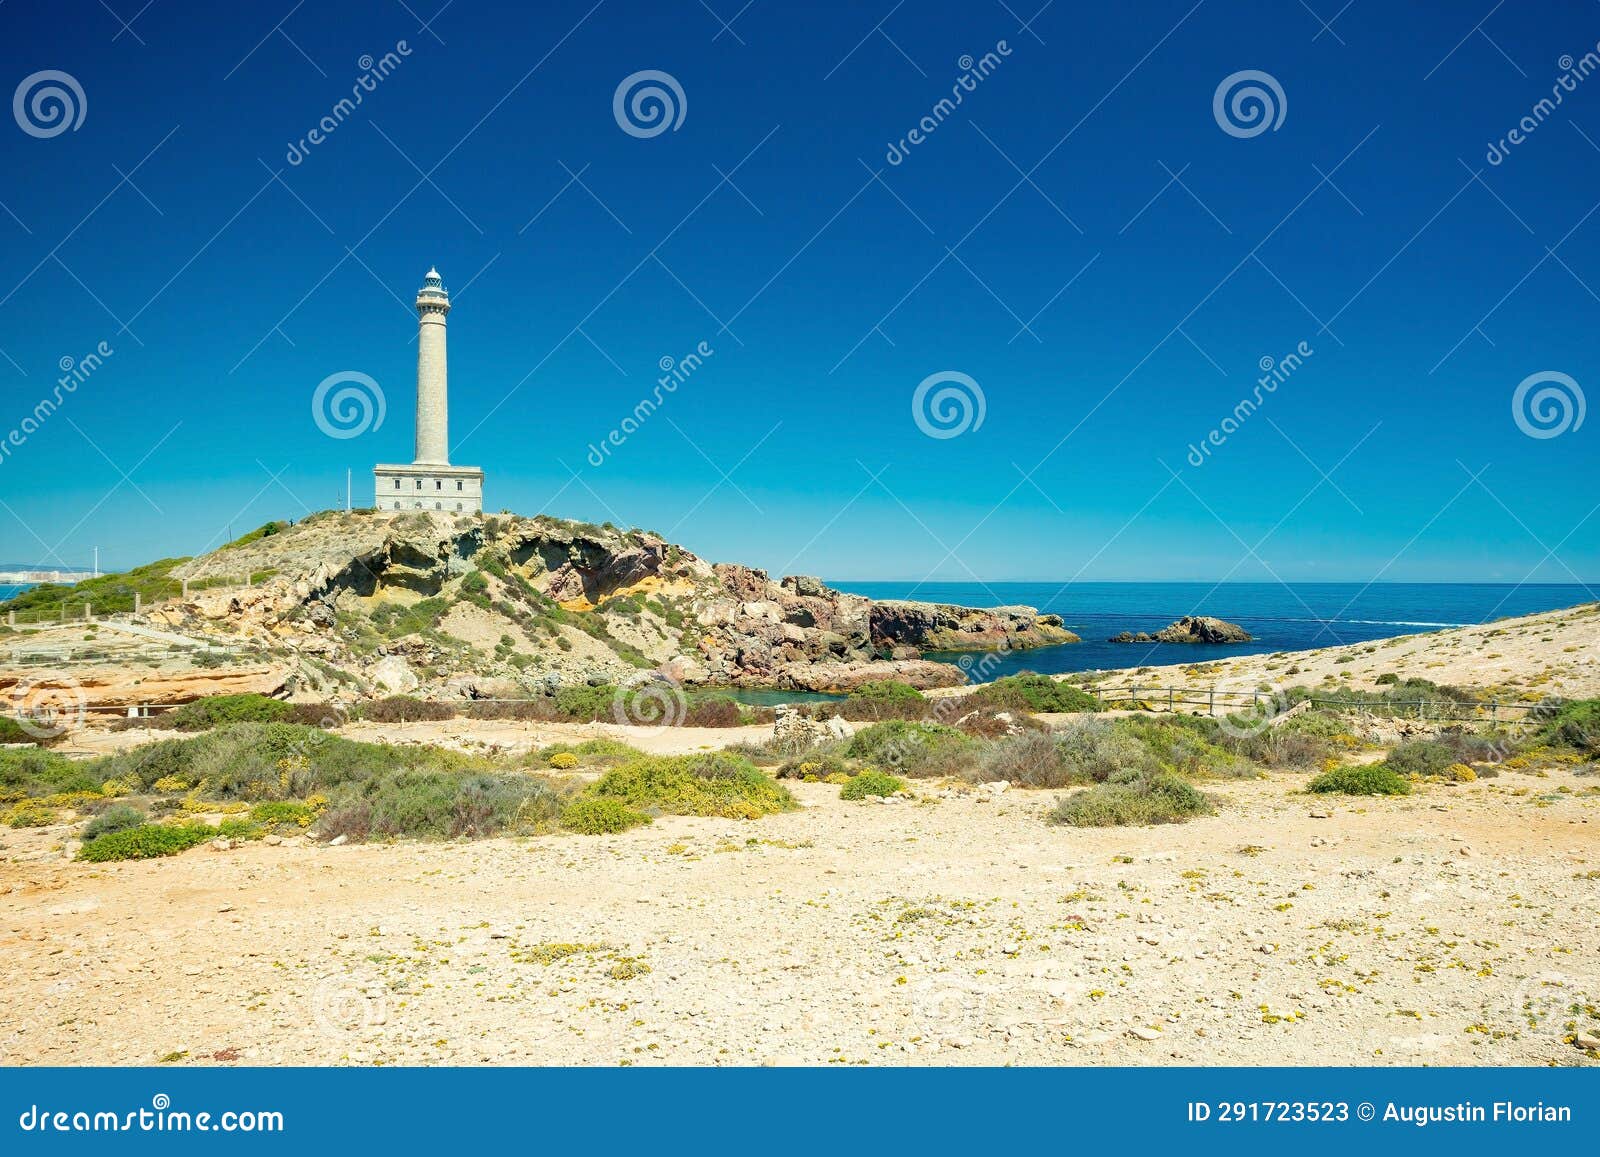 cape palos (cabo de palos) lighthouse and beach, spain